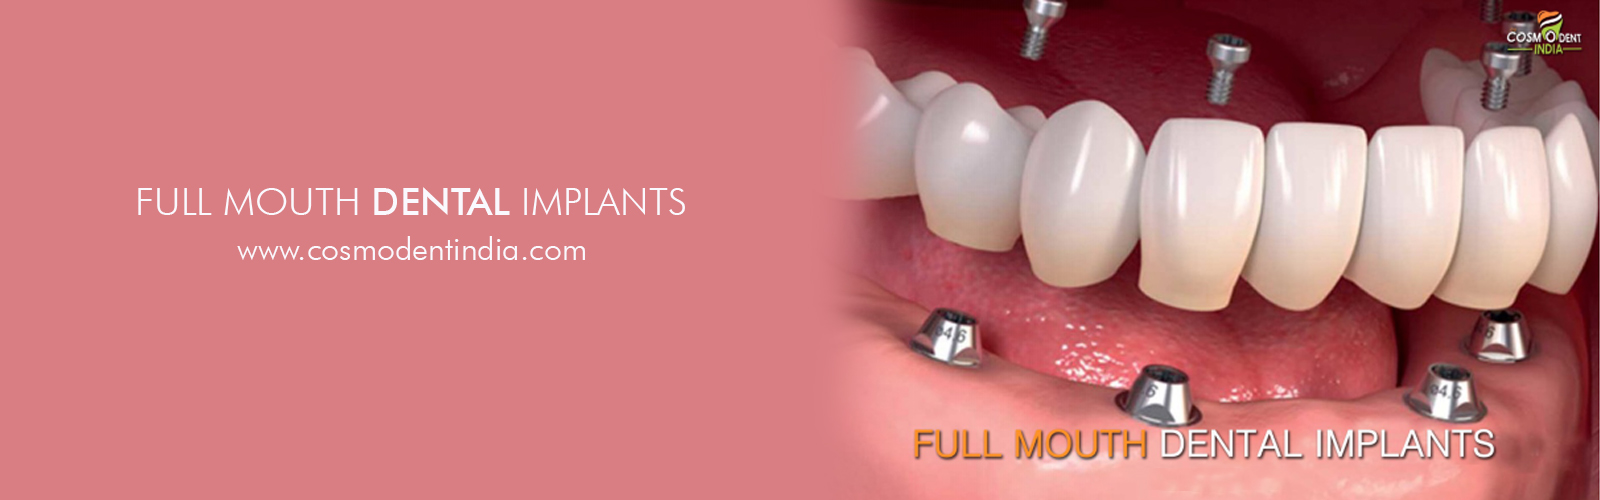 implantes dentales de boca completa en la India